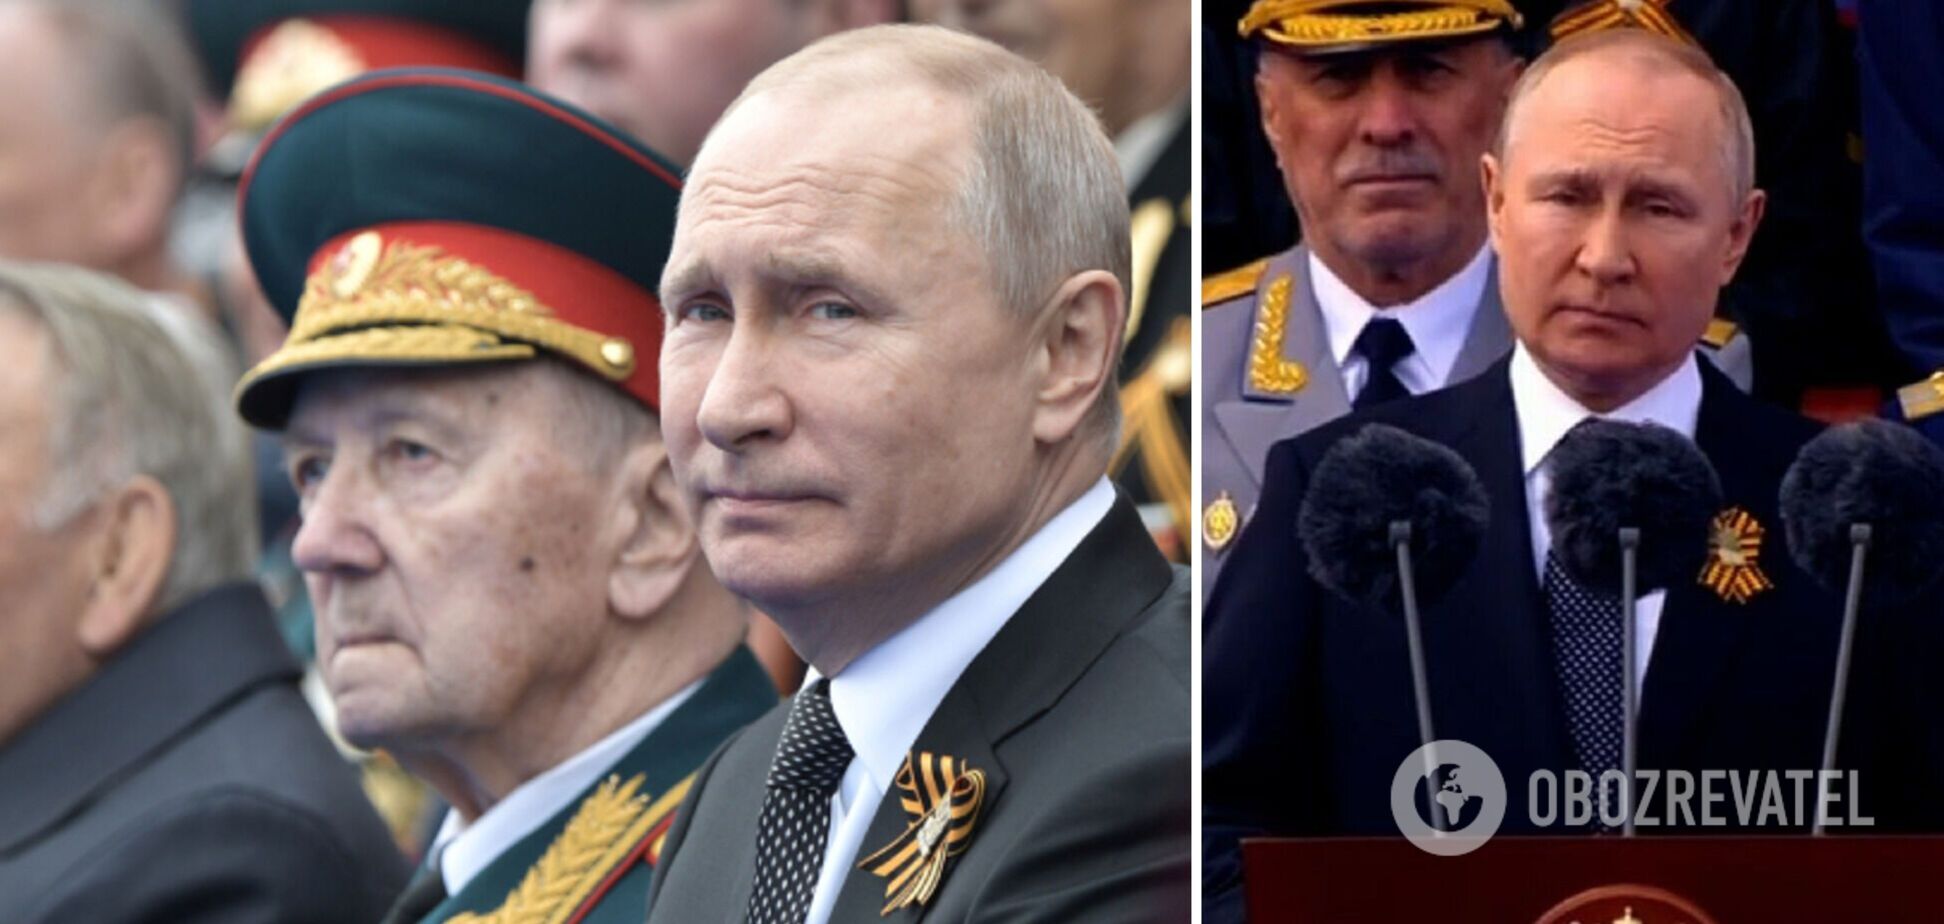 'Он ничего не понимает': Курносова оценила речь Путина на параде 9 мая